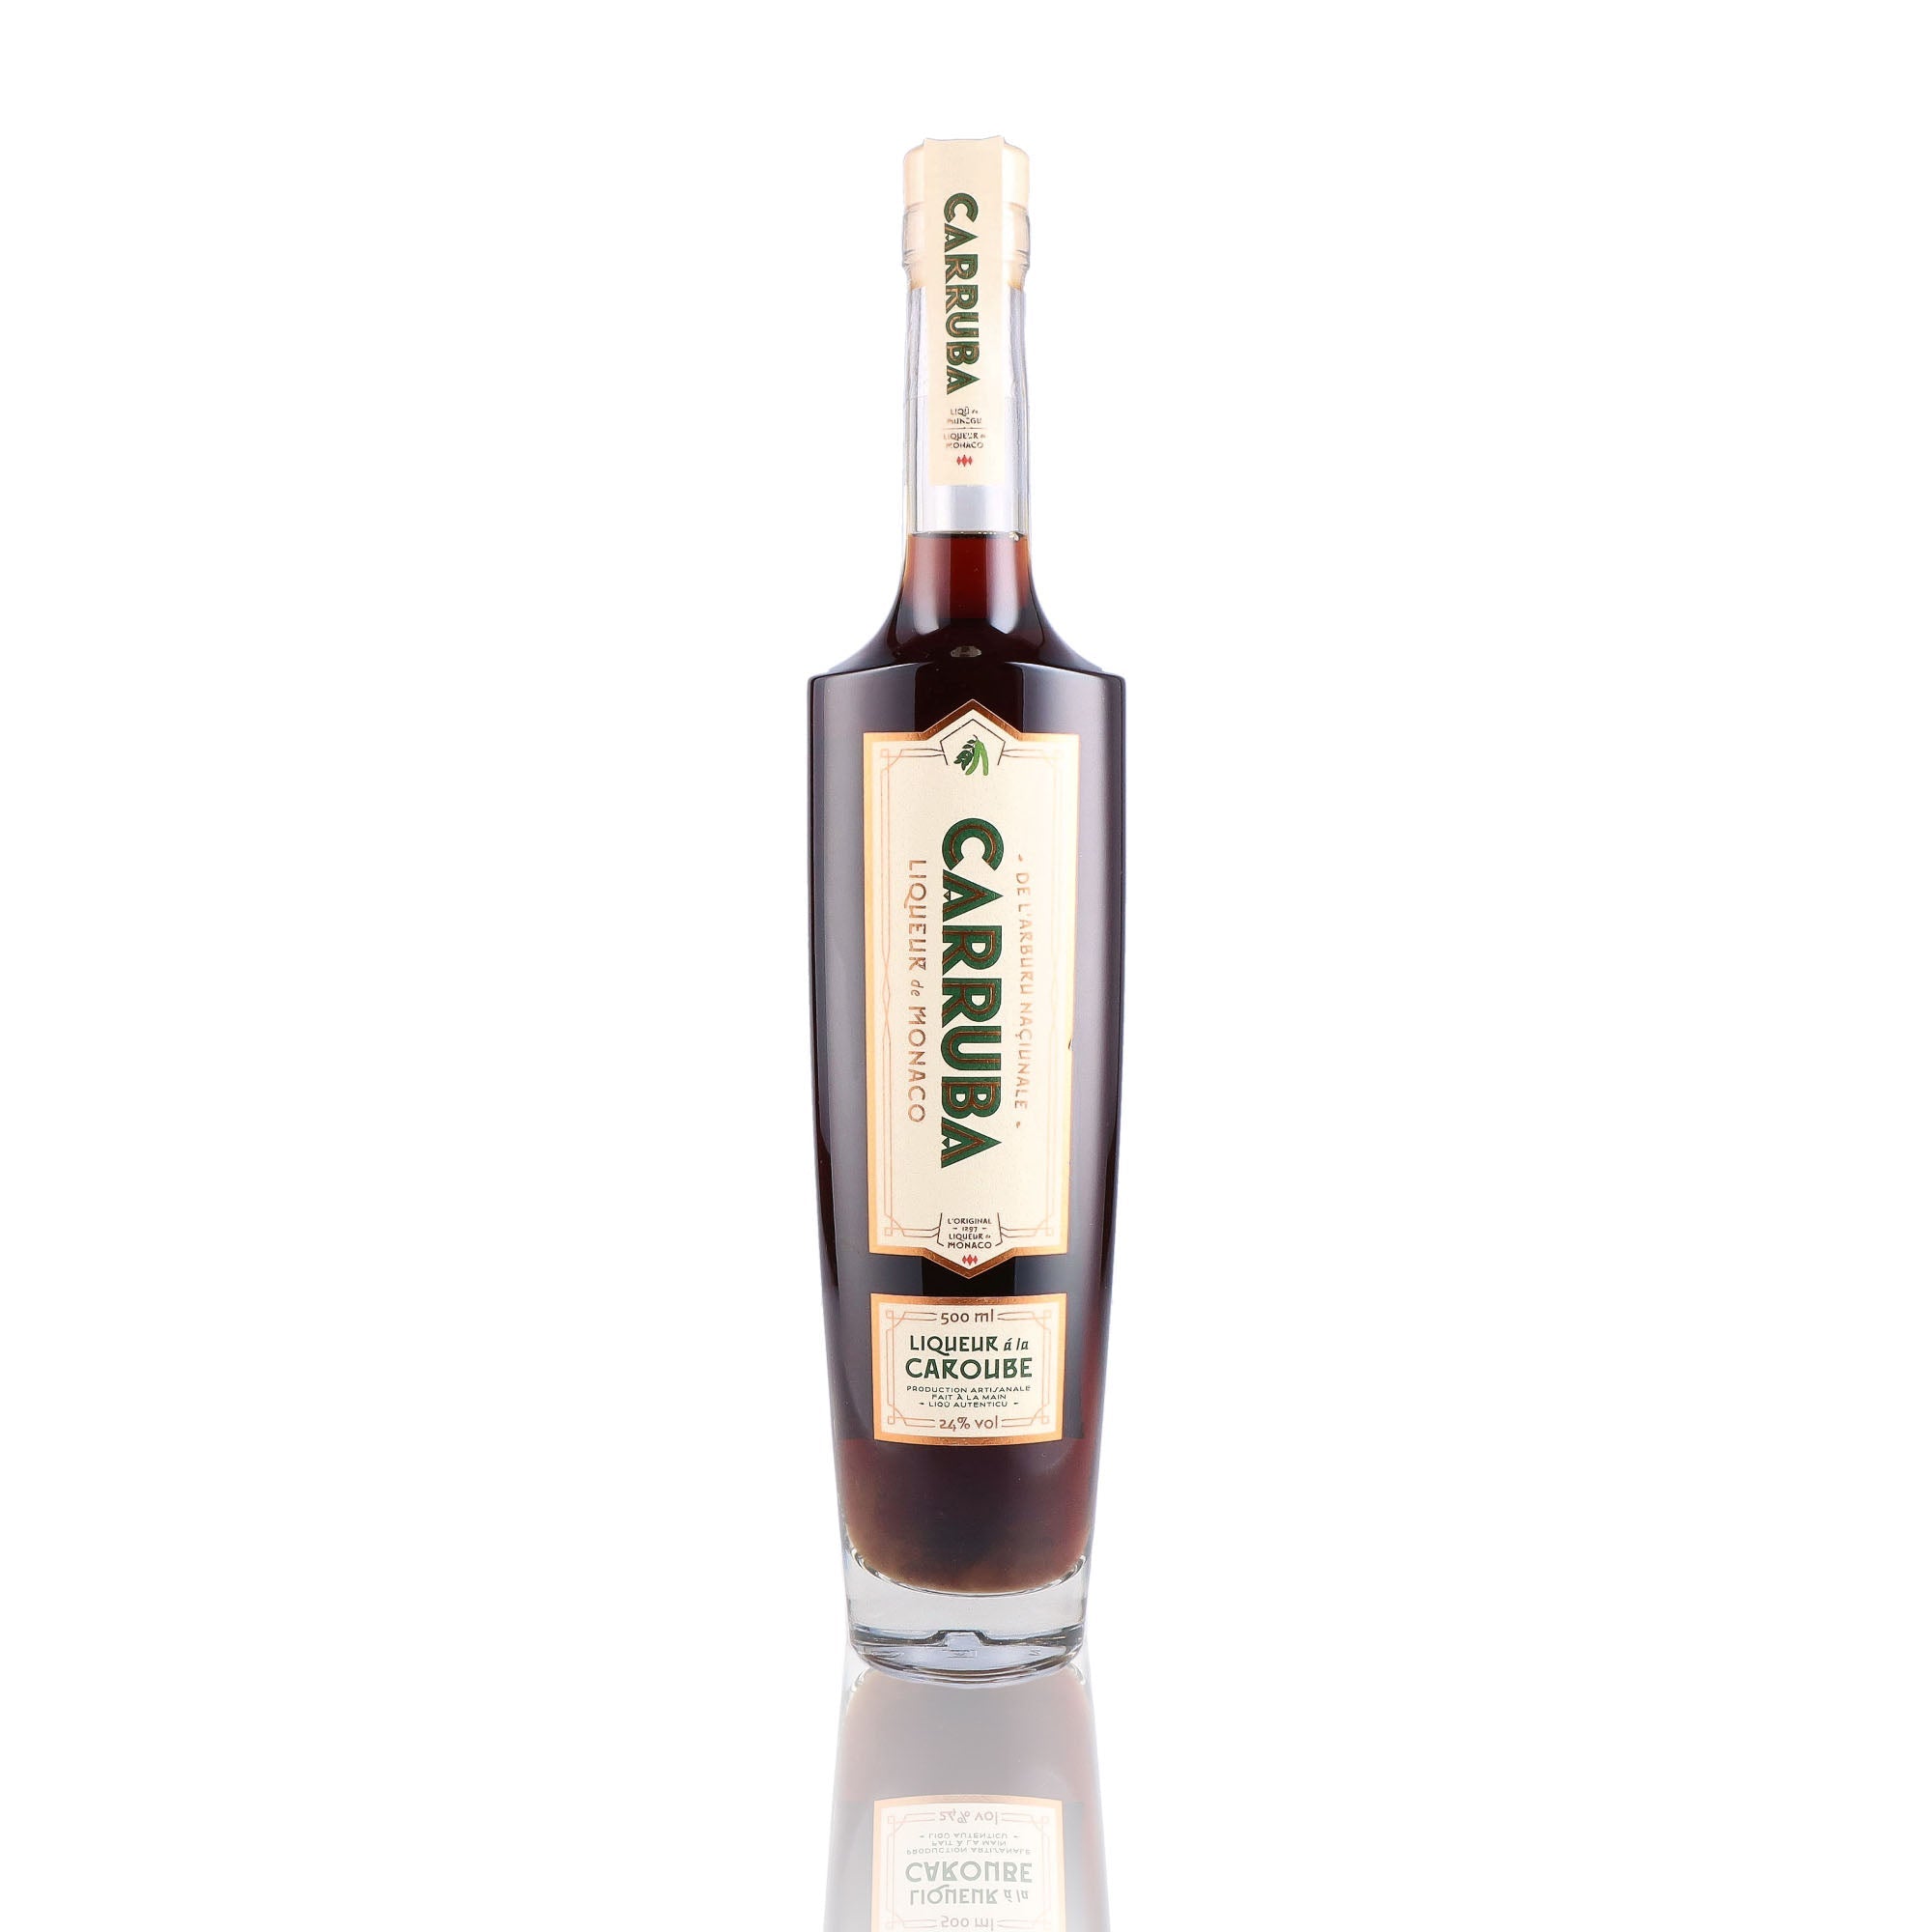 Une bouteille de Liqueur, de la marque Monaco, nommée Carruba Liqueur à la Caroube.